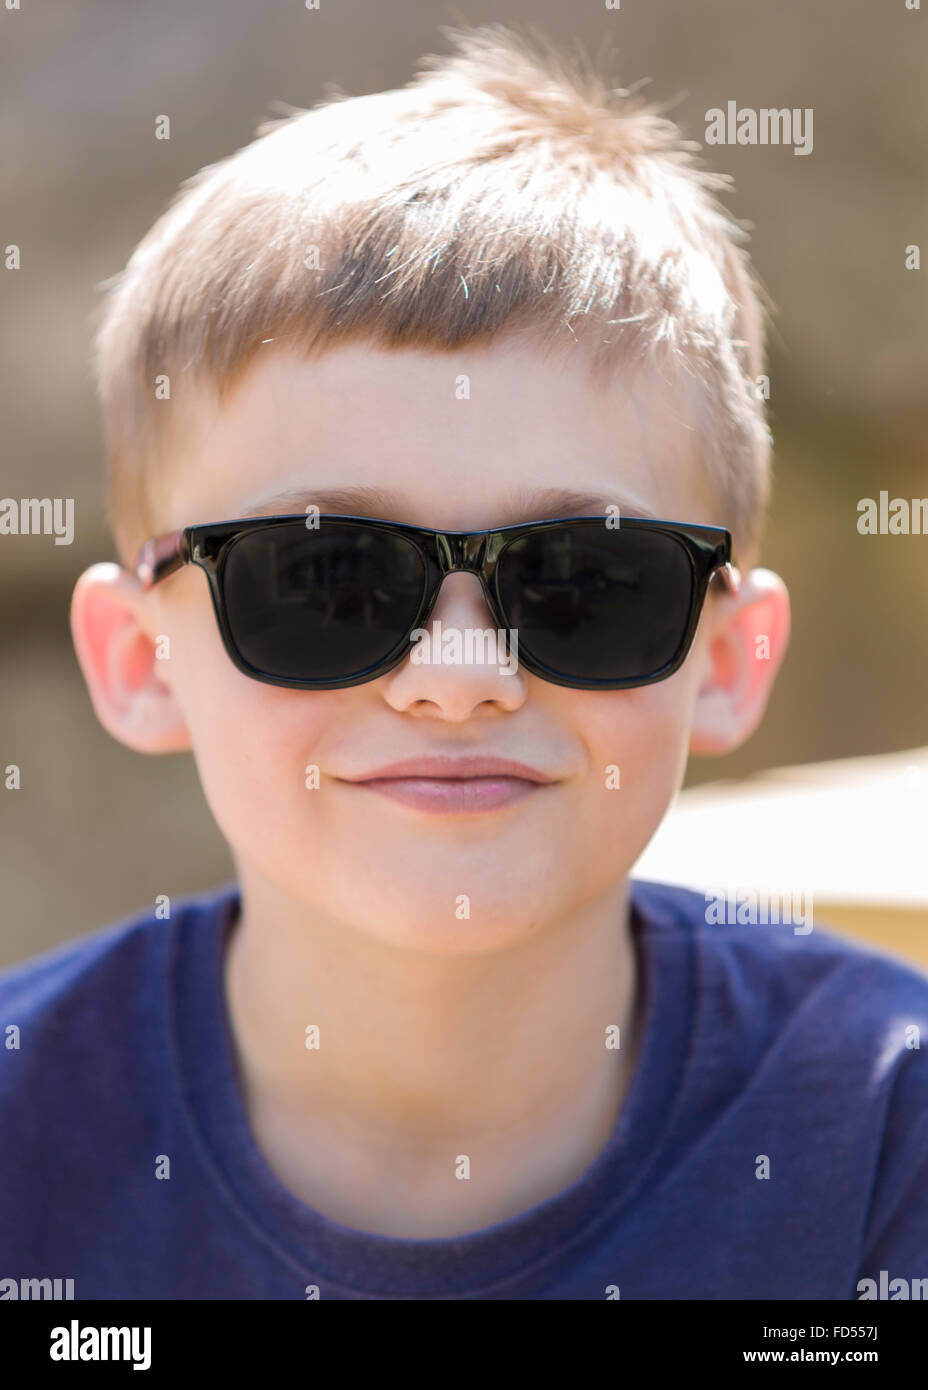 Jeune garçon portant des lunettes de soleil outdoor portrait modèle libération : Oui. Biens : Non. Banque D'Images